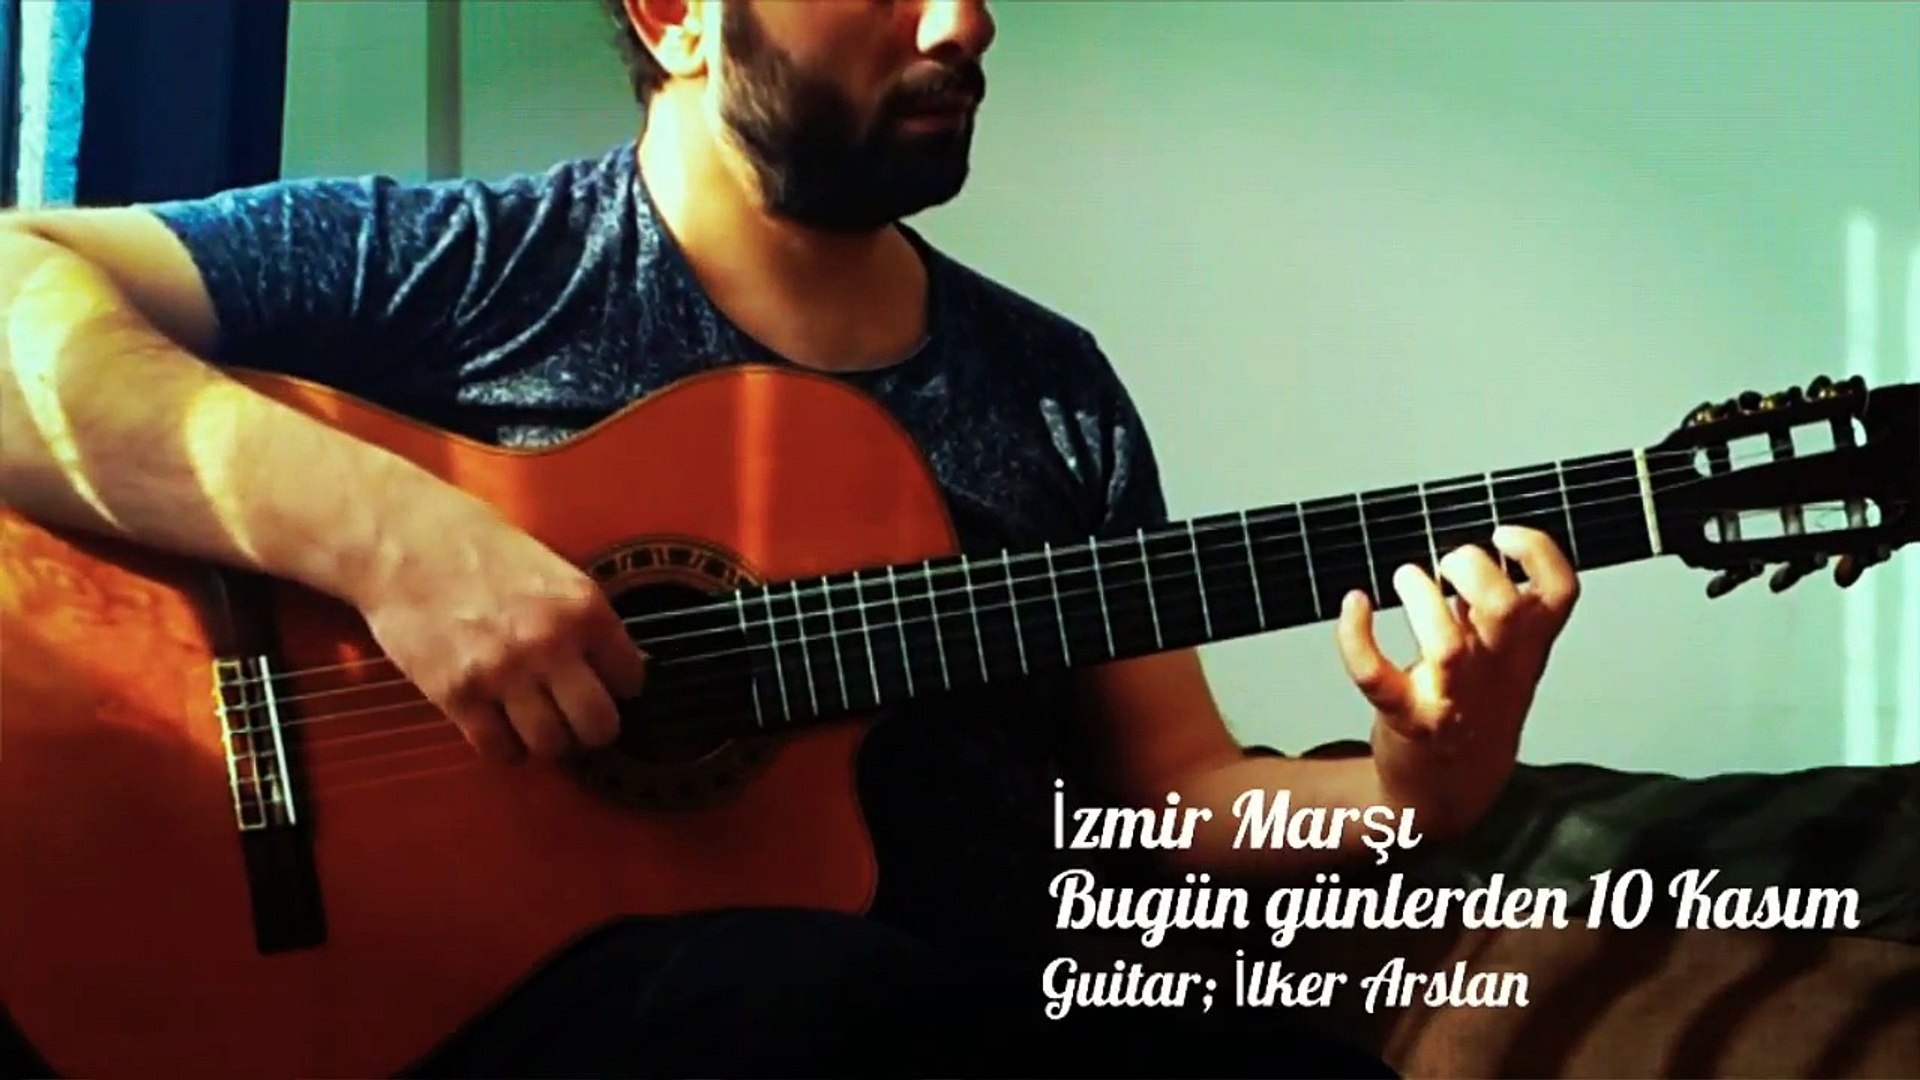 Gitar ve Izmir Marsı "10 Kasm" Klasik Gitar Performans, Özel Gitar Dersi  Beşiktaş 05542325163, Gitar Kursu İstanbul - Dailymotion Video